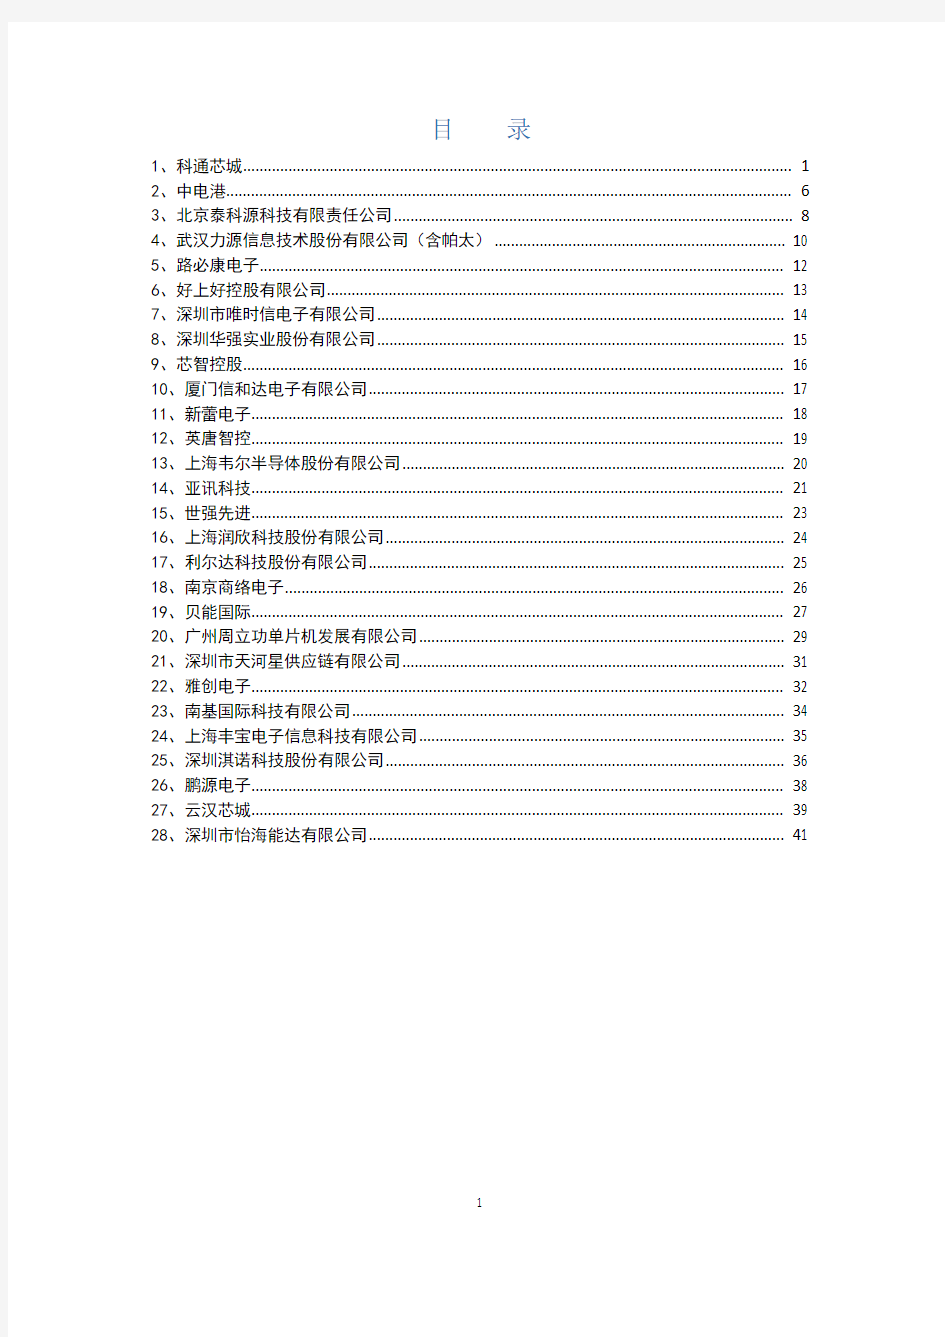 中国电子元器件分销商2016营收排名